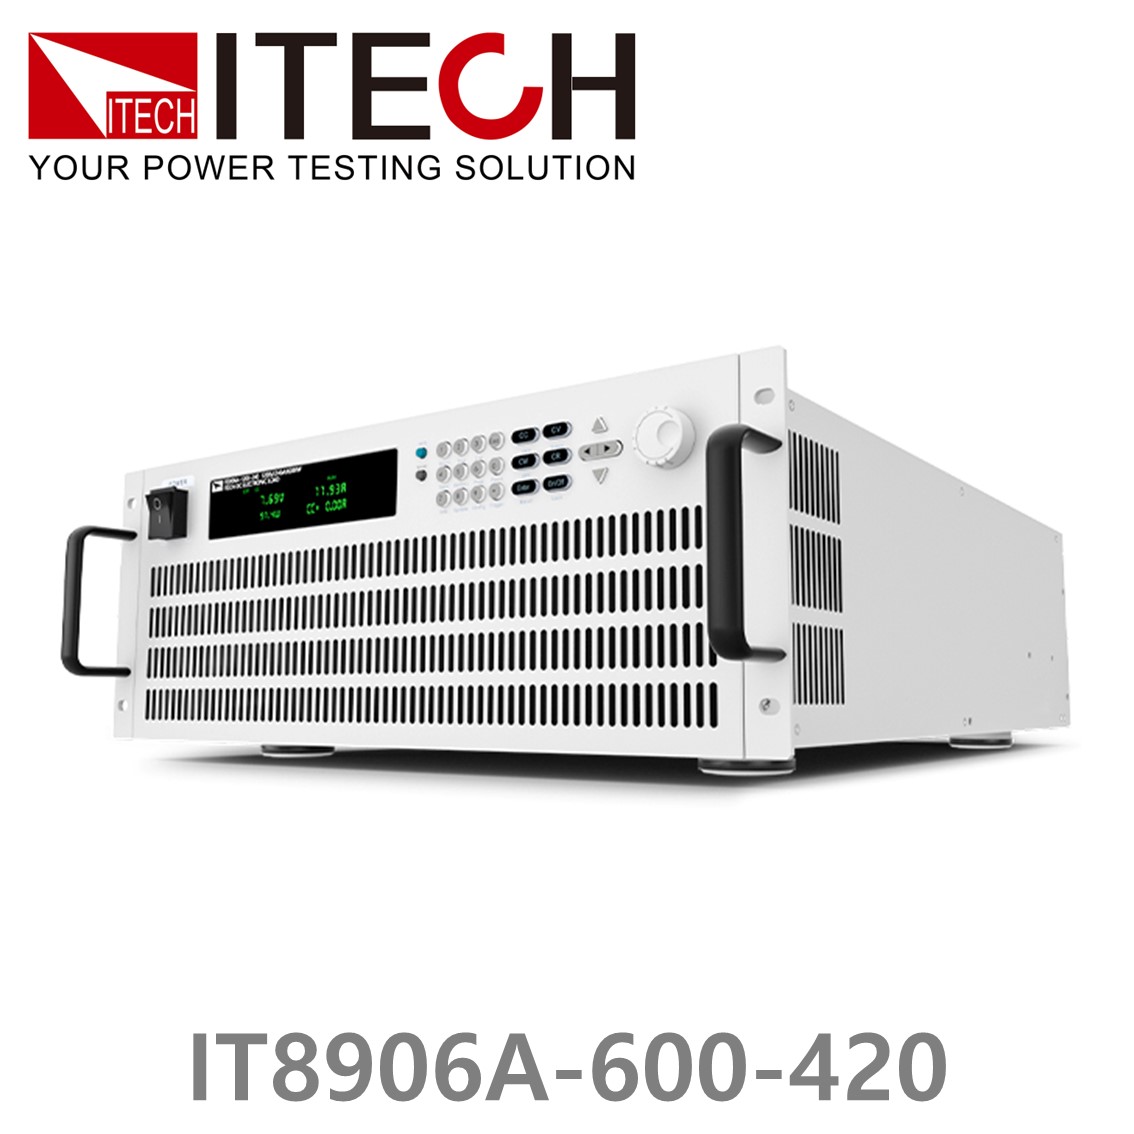 [ ITECH ] IT8906A-600-420  고성능 고전력 DC 전자로드 600V/420A/6kW (4U)